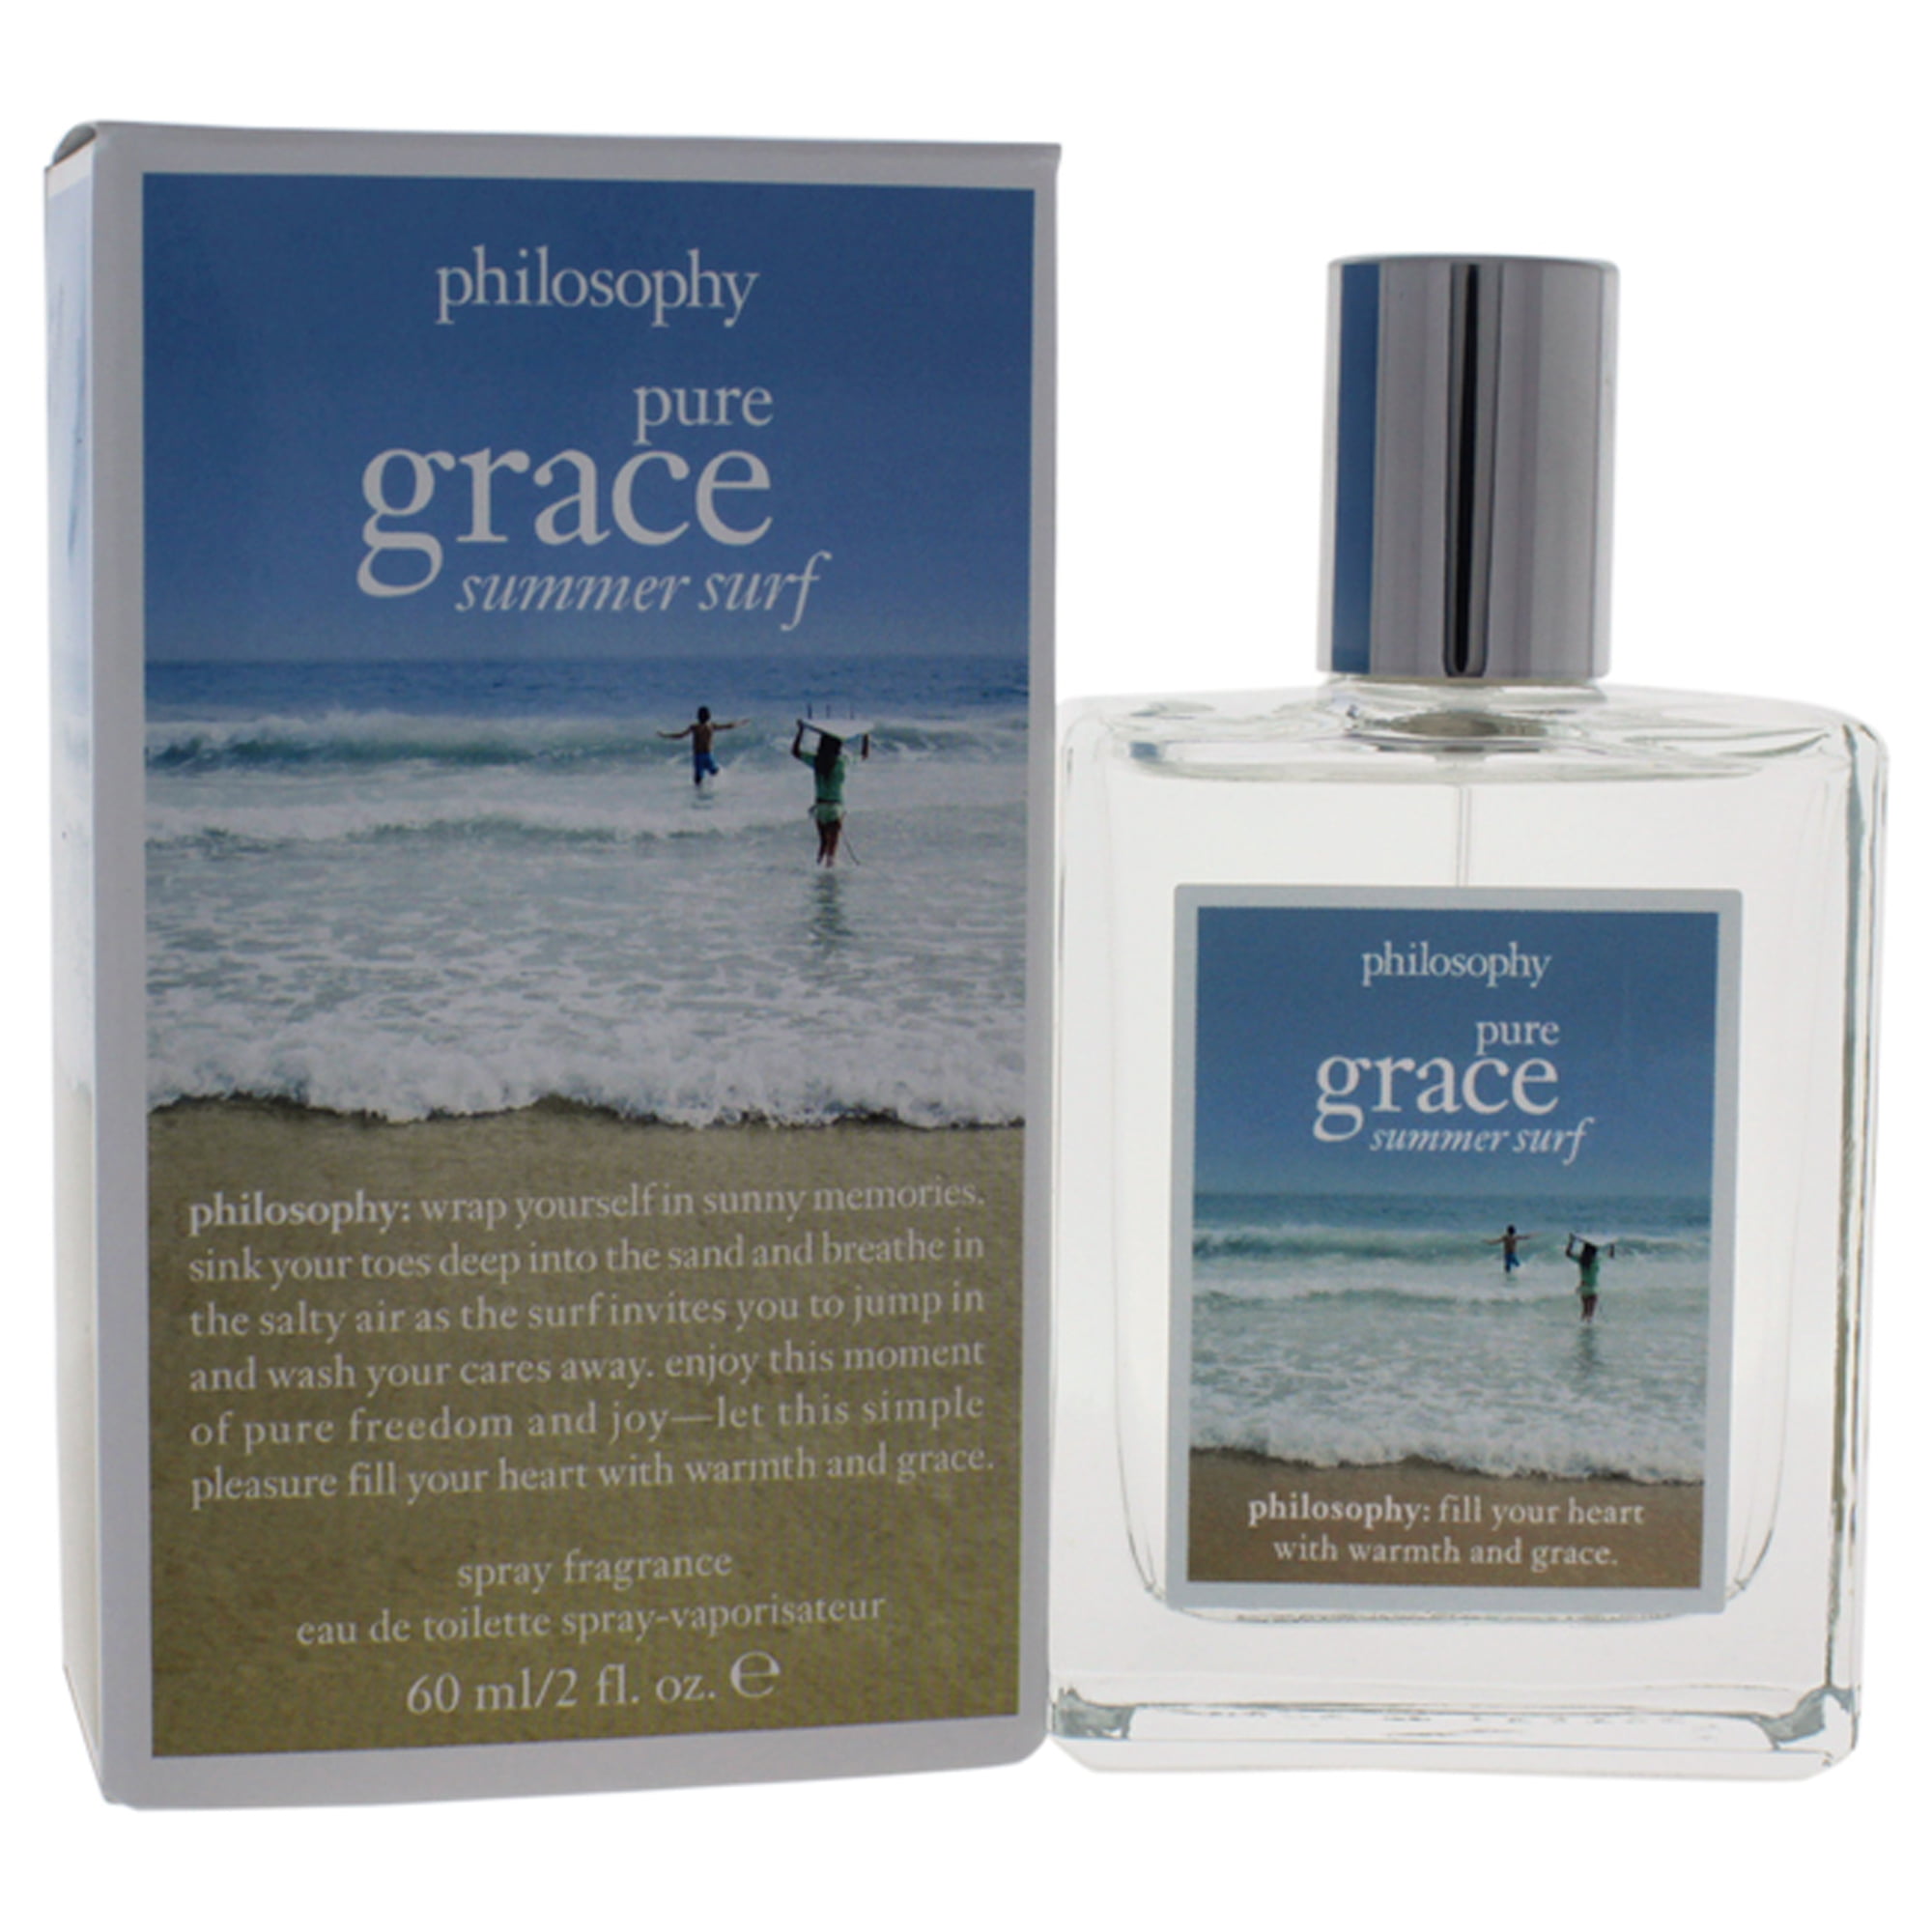 Philosophy - Pure Grace Summer Moments Spray Fragrance Eau de Toilette 2  oz. - Beauty Bridge